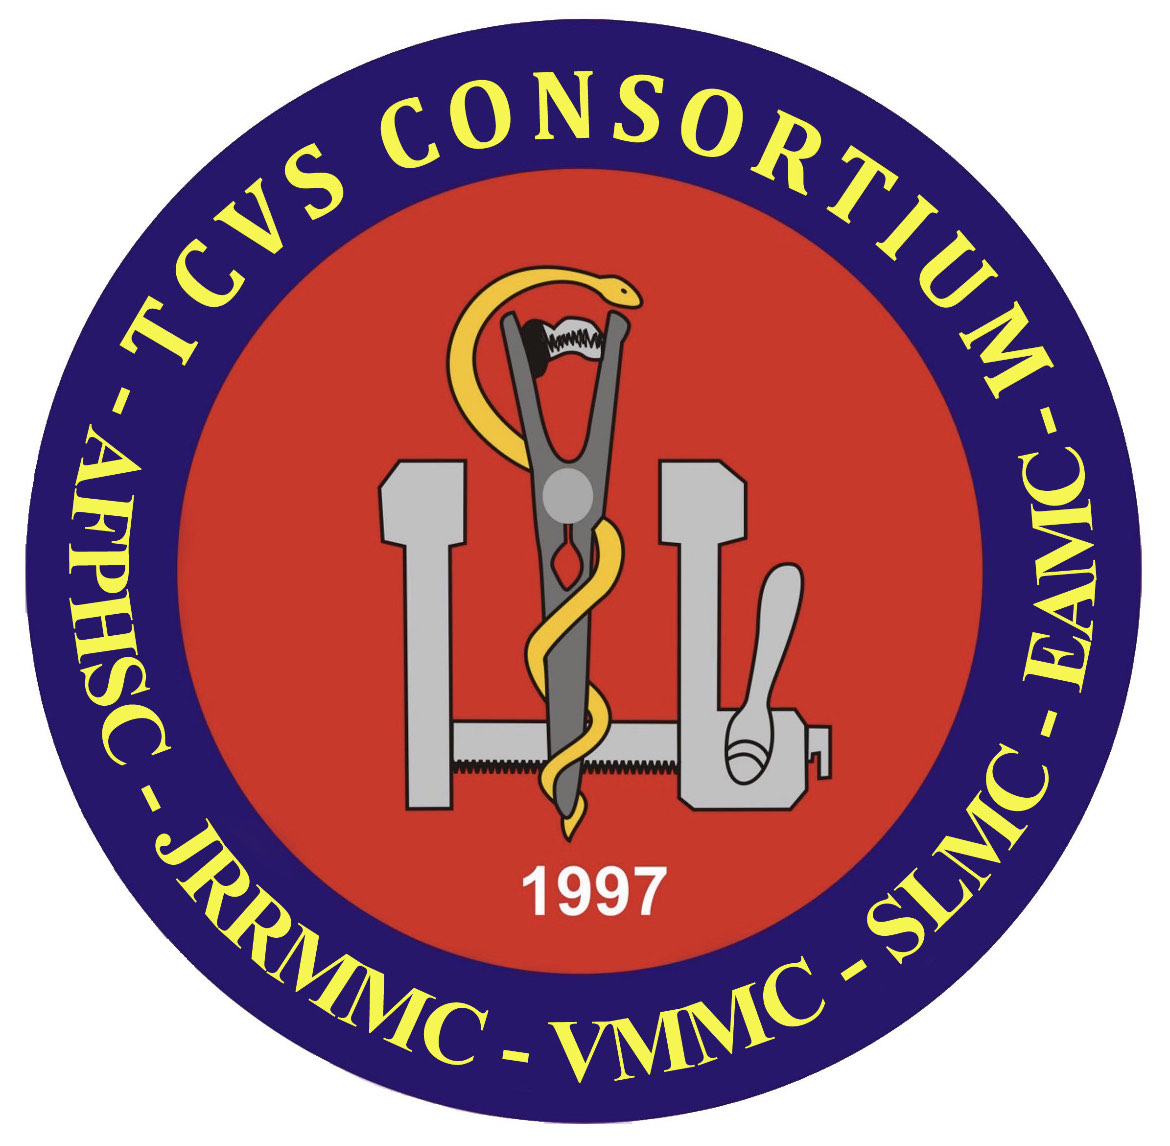 TCVS Consortium 2022